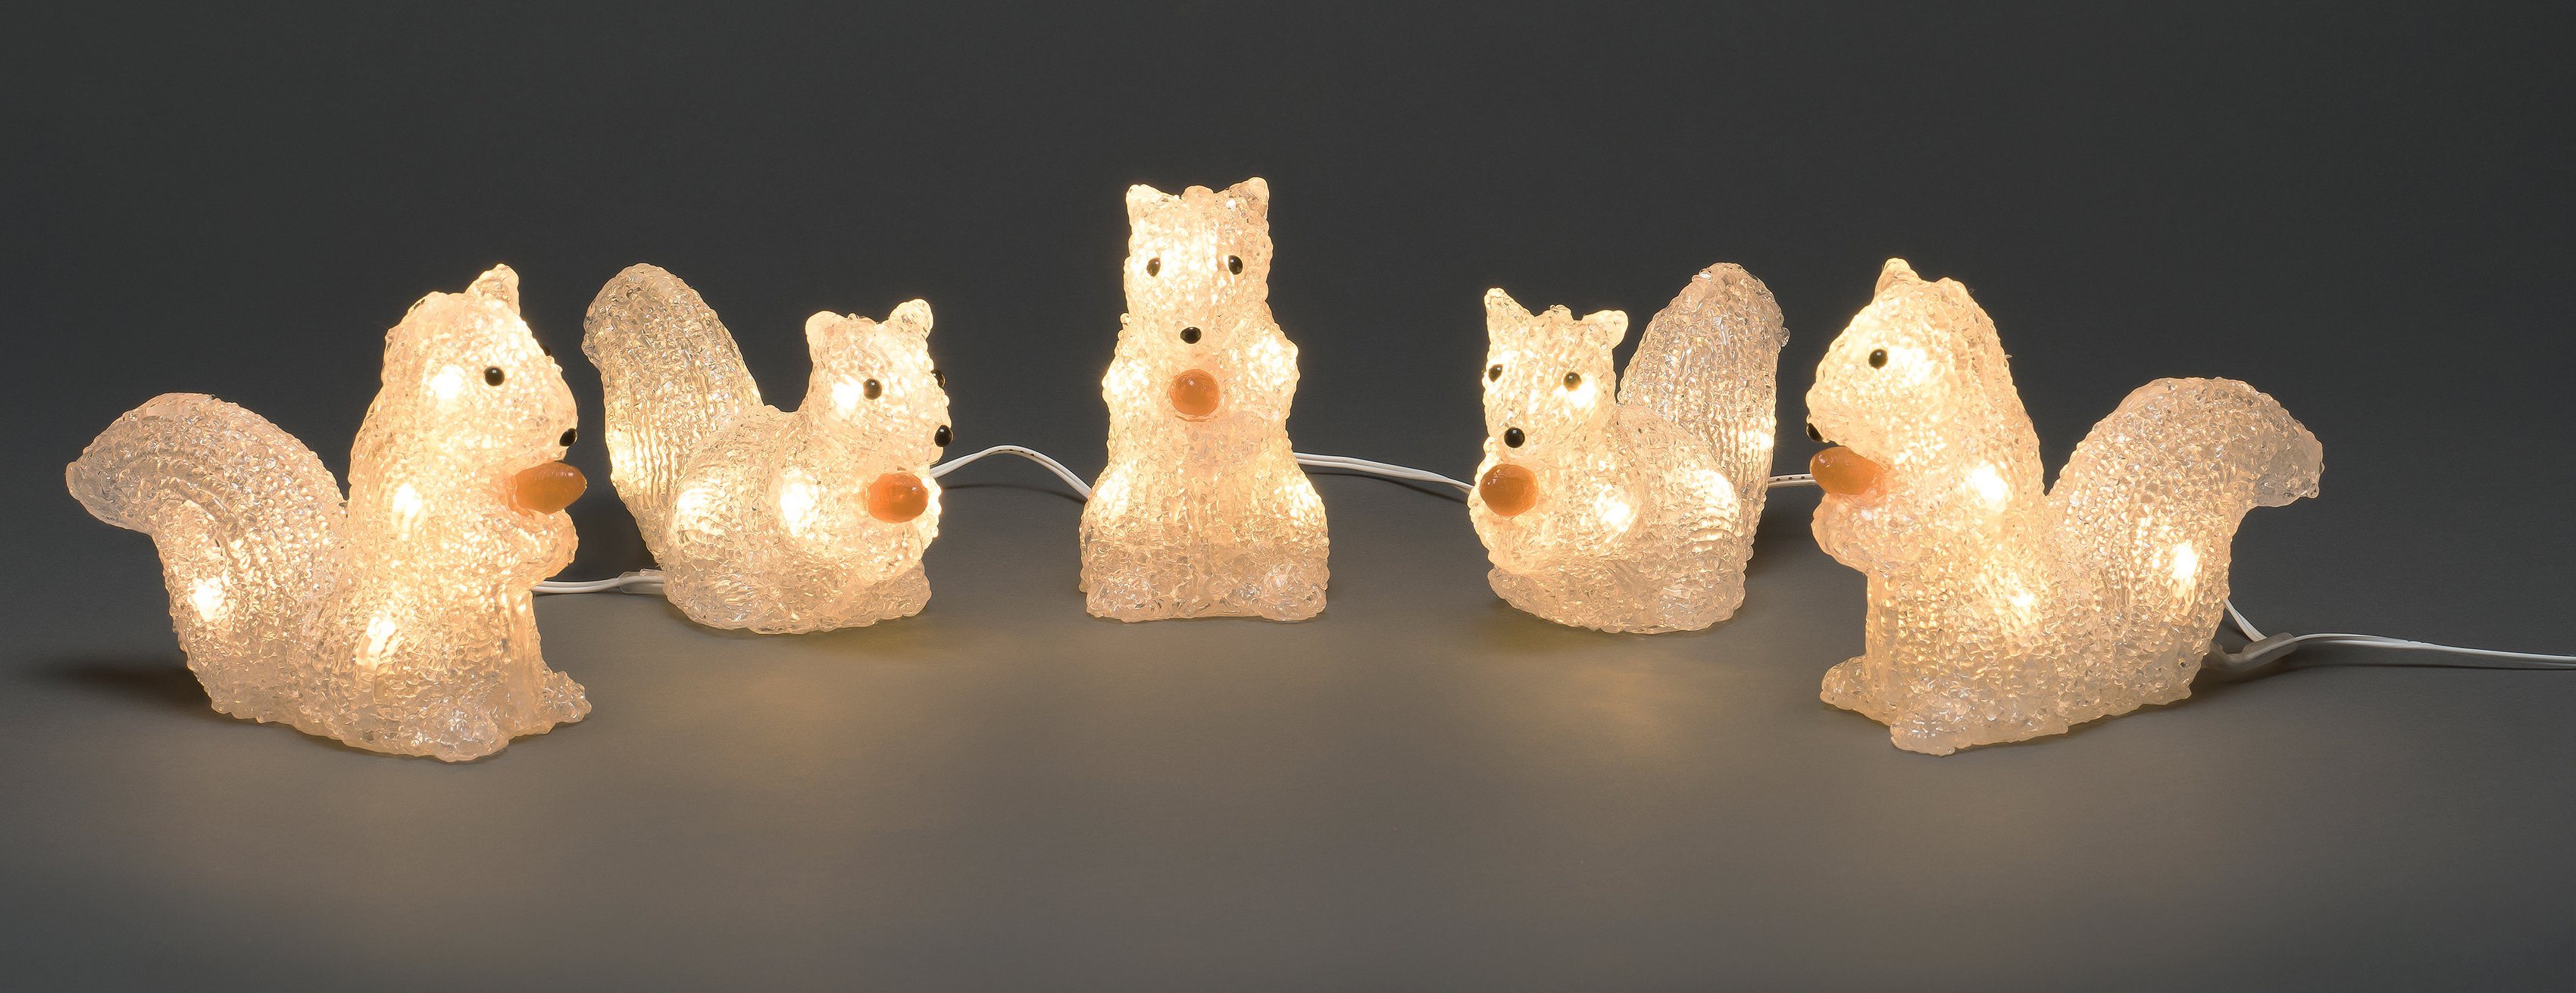 Weihnachtsdeko Eichhörnchen, Dioden warmweissen KONSTSMIDE LED-Lichterkette aussen, mit 40